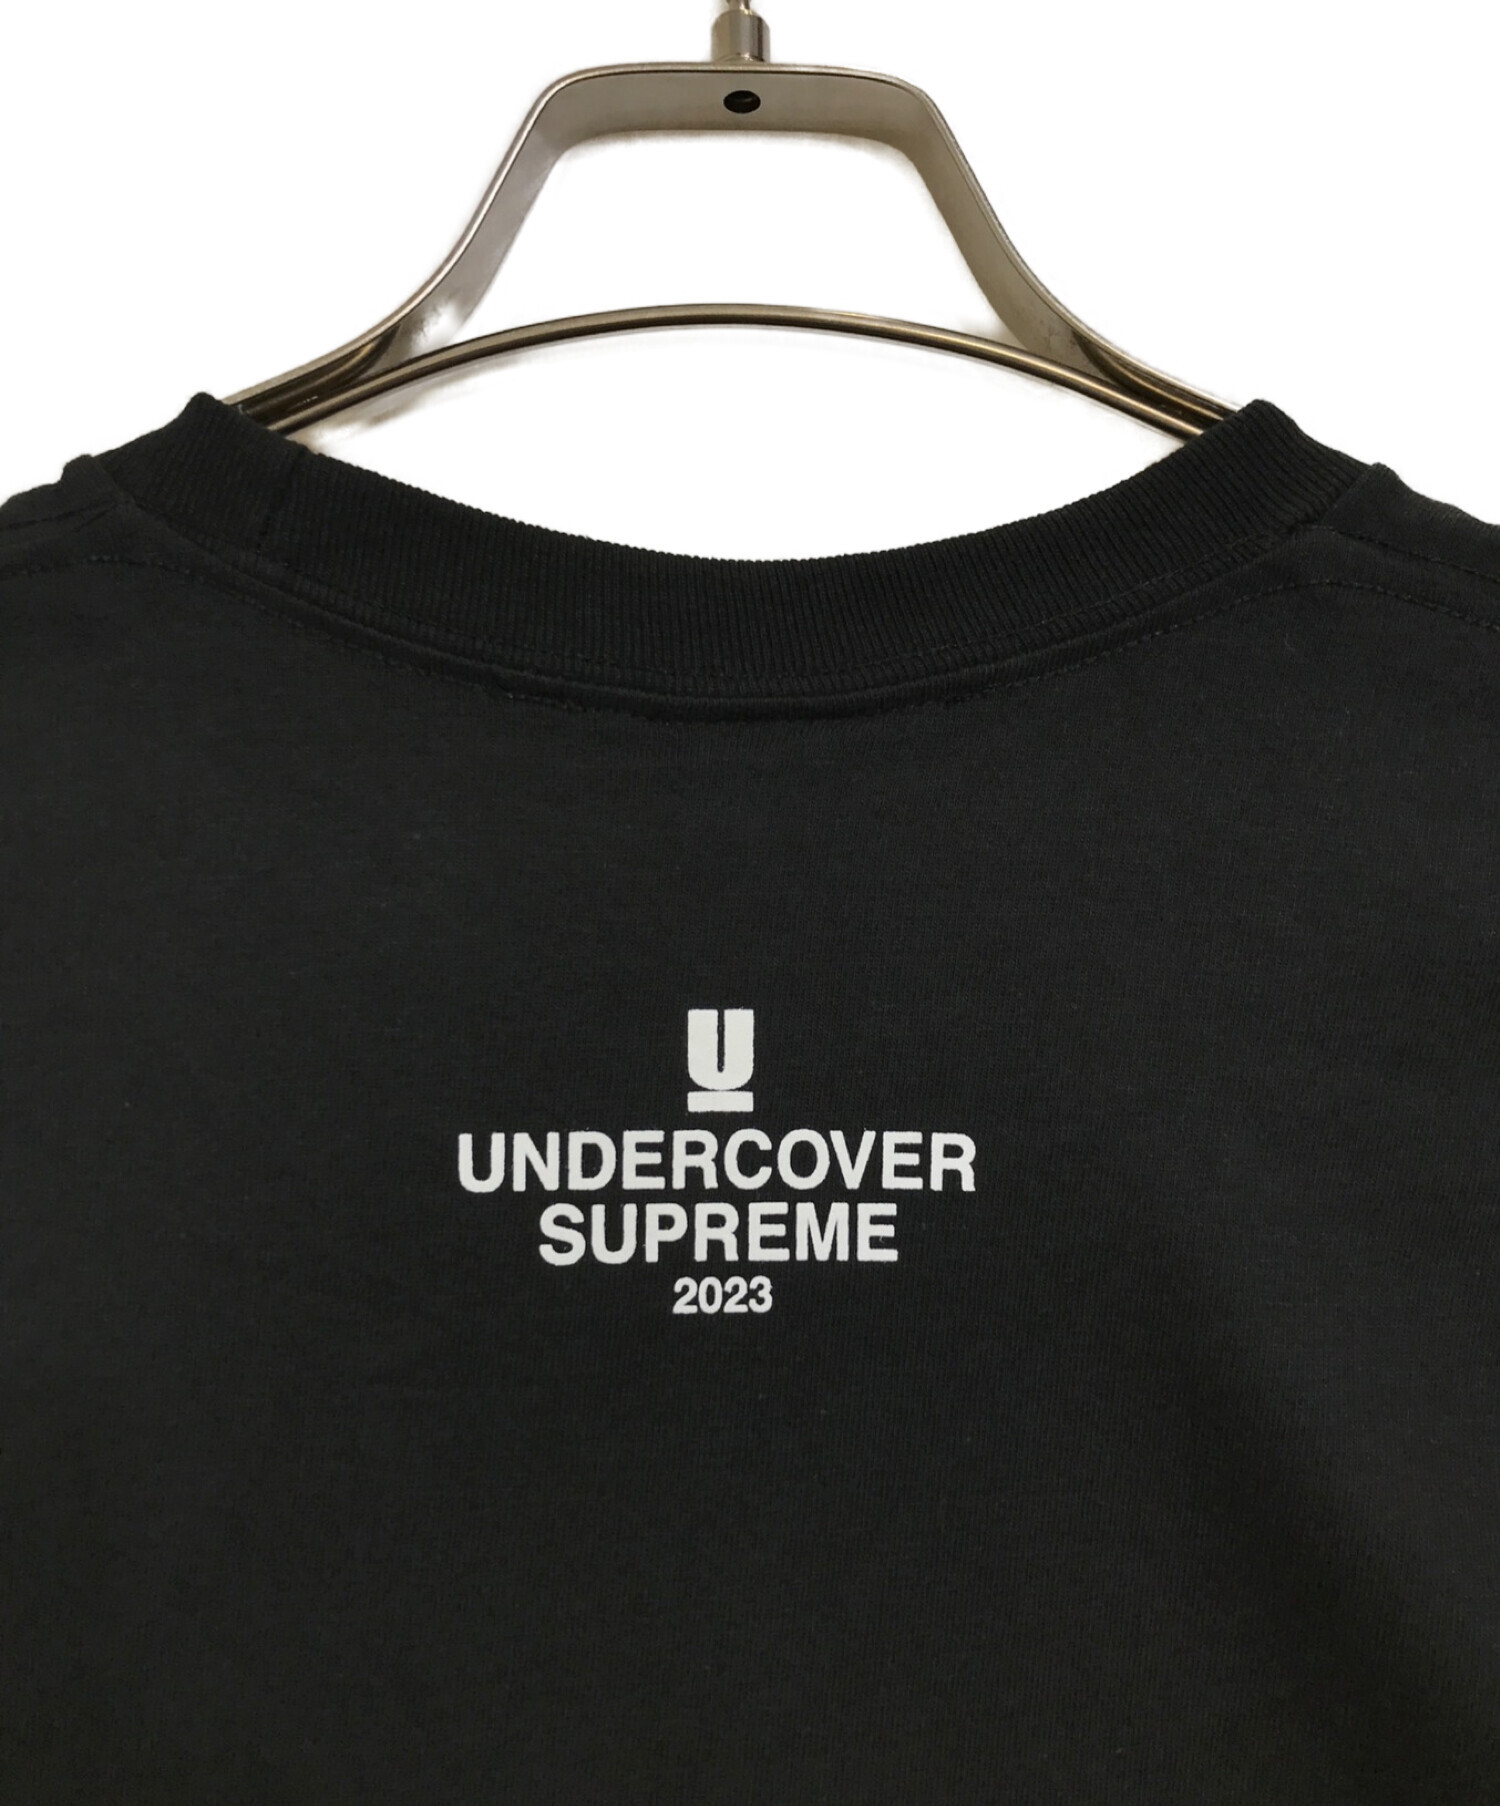 Supreme×Undercover (シュプリーム×アンダーカバー) Tag Tee ブラック サイズ:L